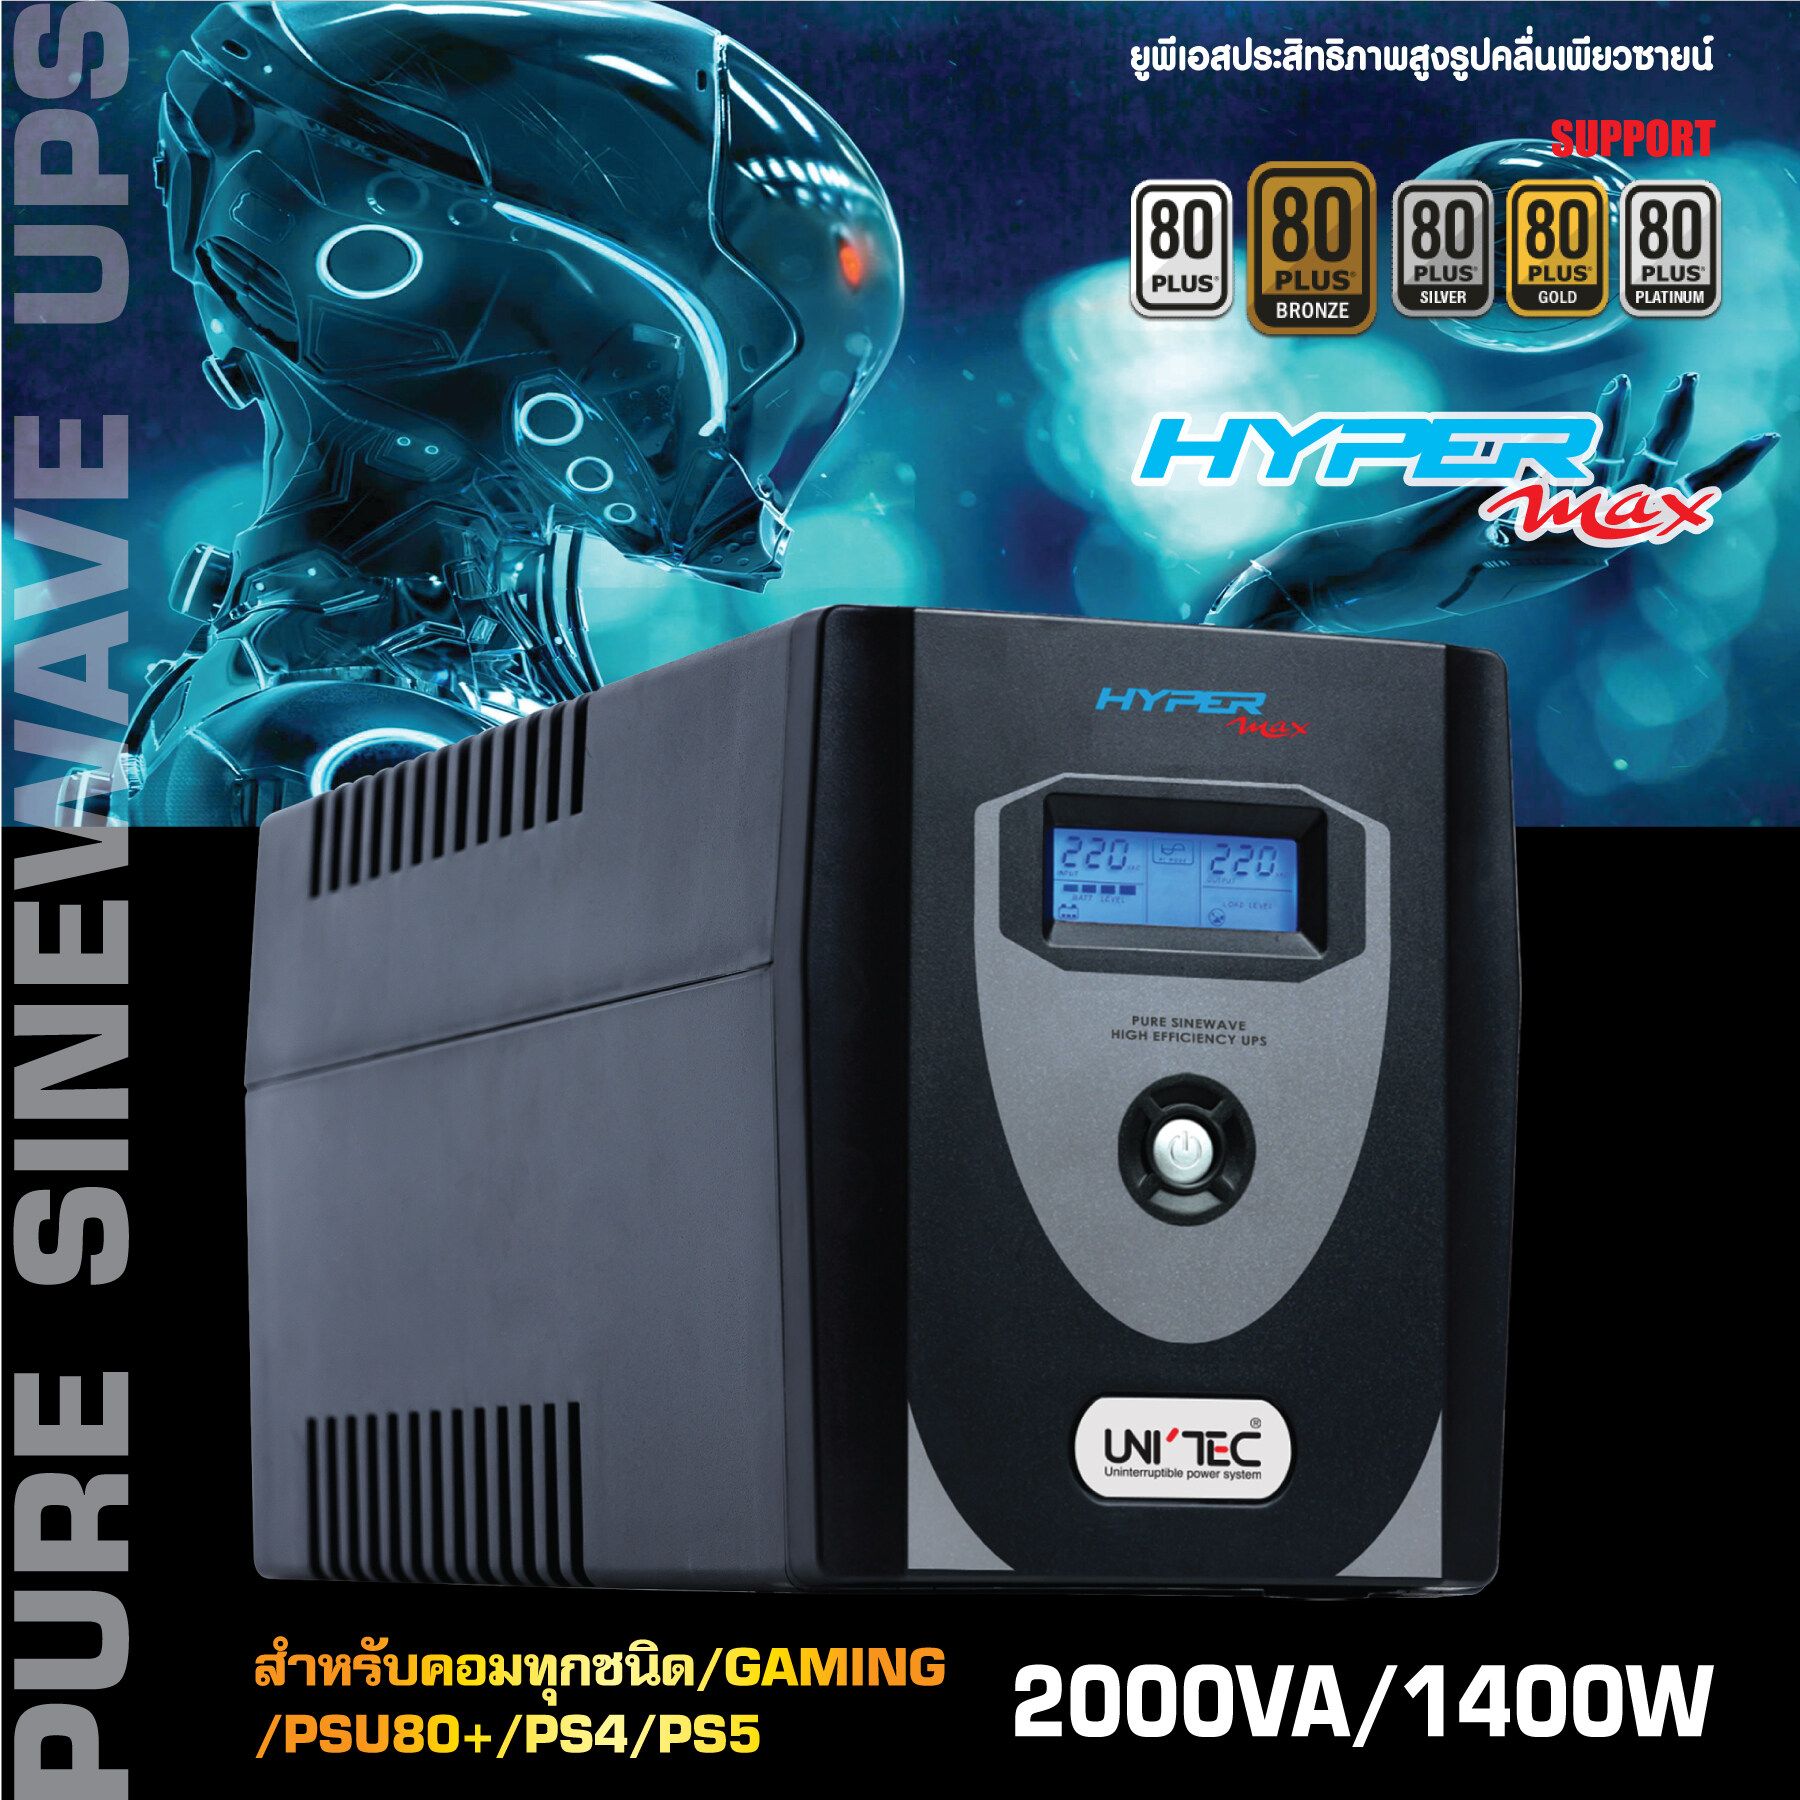 HYPERMAX-2000VA/1400W ซายน์เวฟ เครื่องสำรองไฟ สำหรับคอมเกมมิ่ง/คอมประกอบ/PSU80+/GAMING/iMac,PS4/PS5 20-40นาที